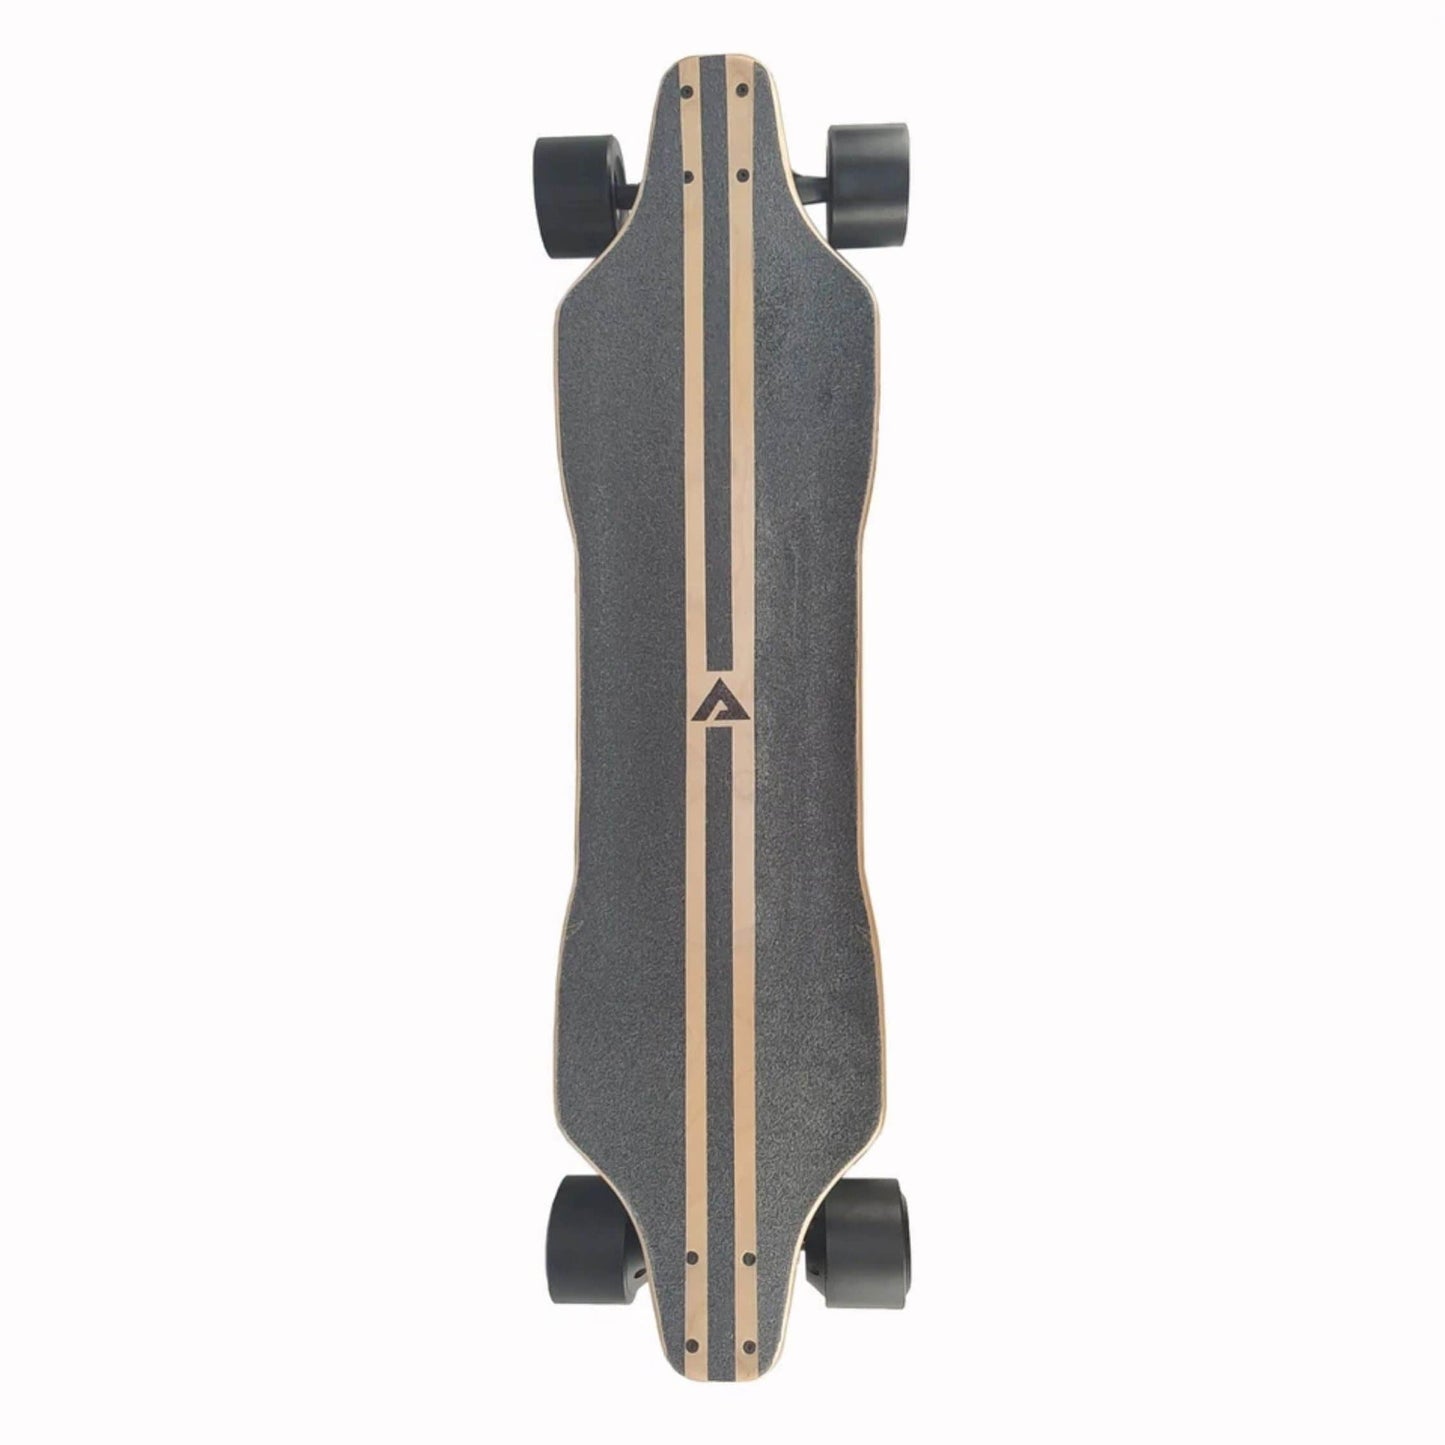 Aeboard AE5 Electric Skateboard